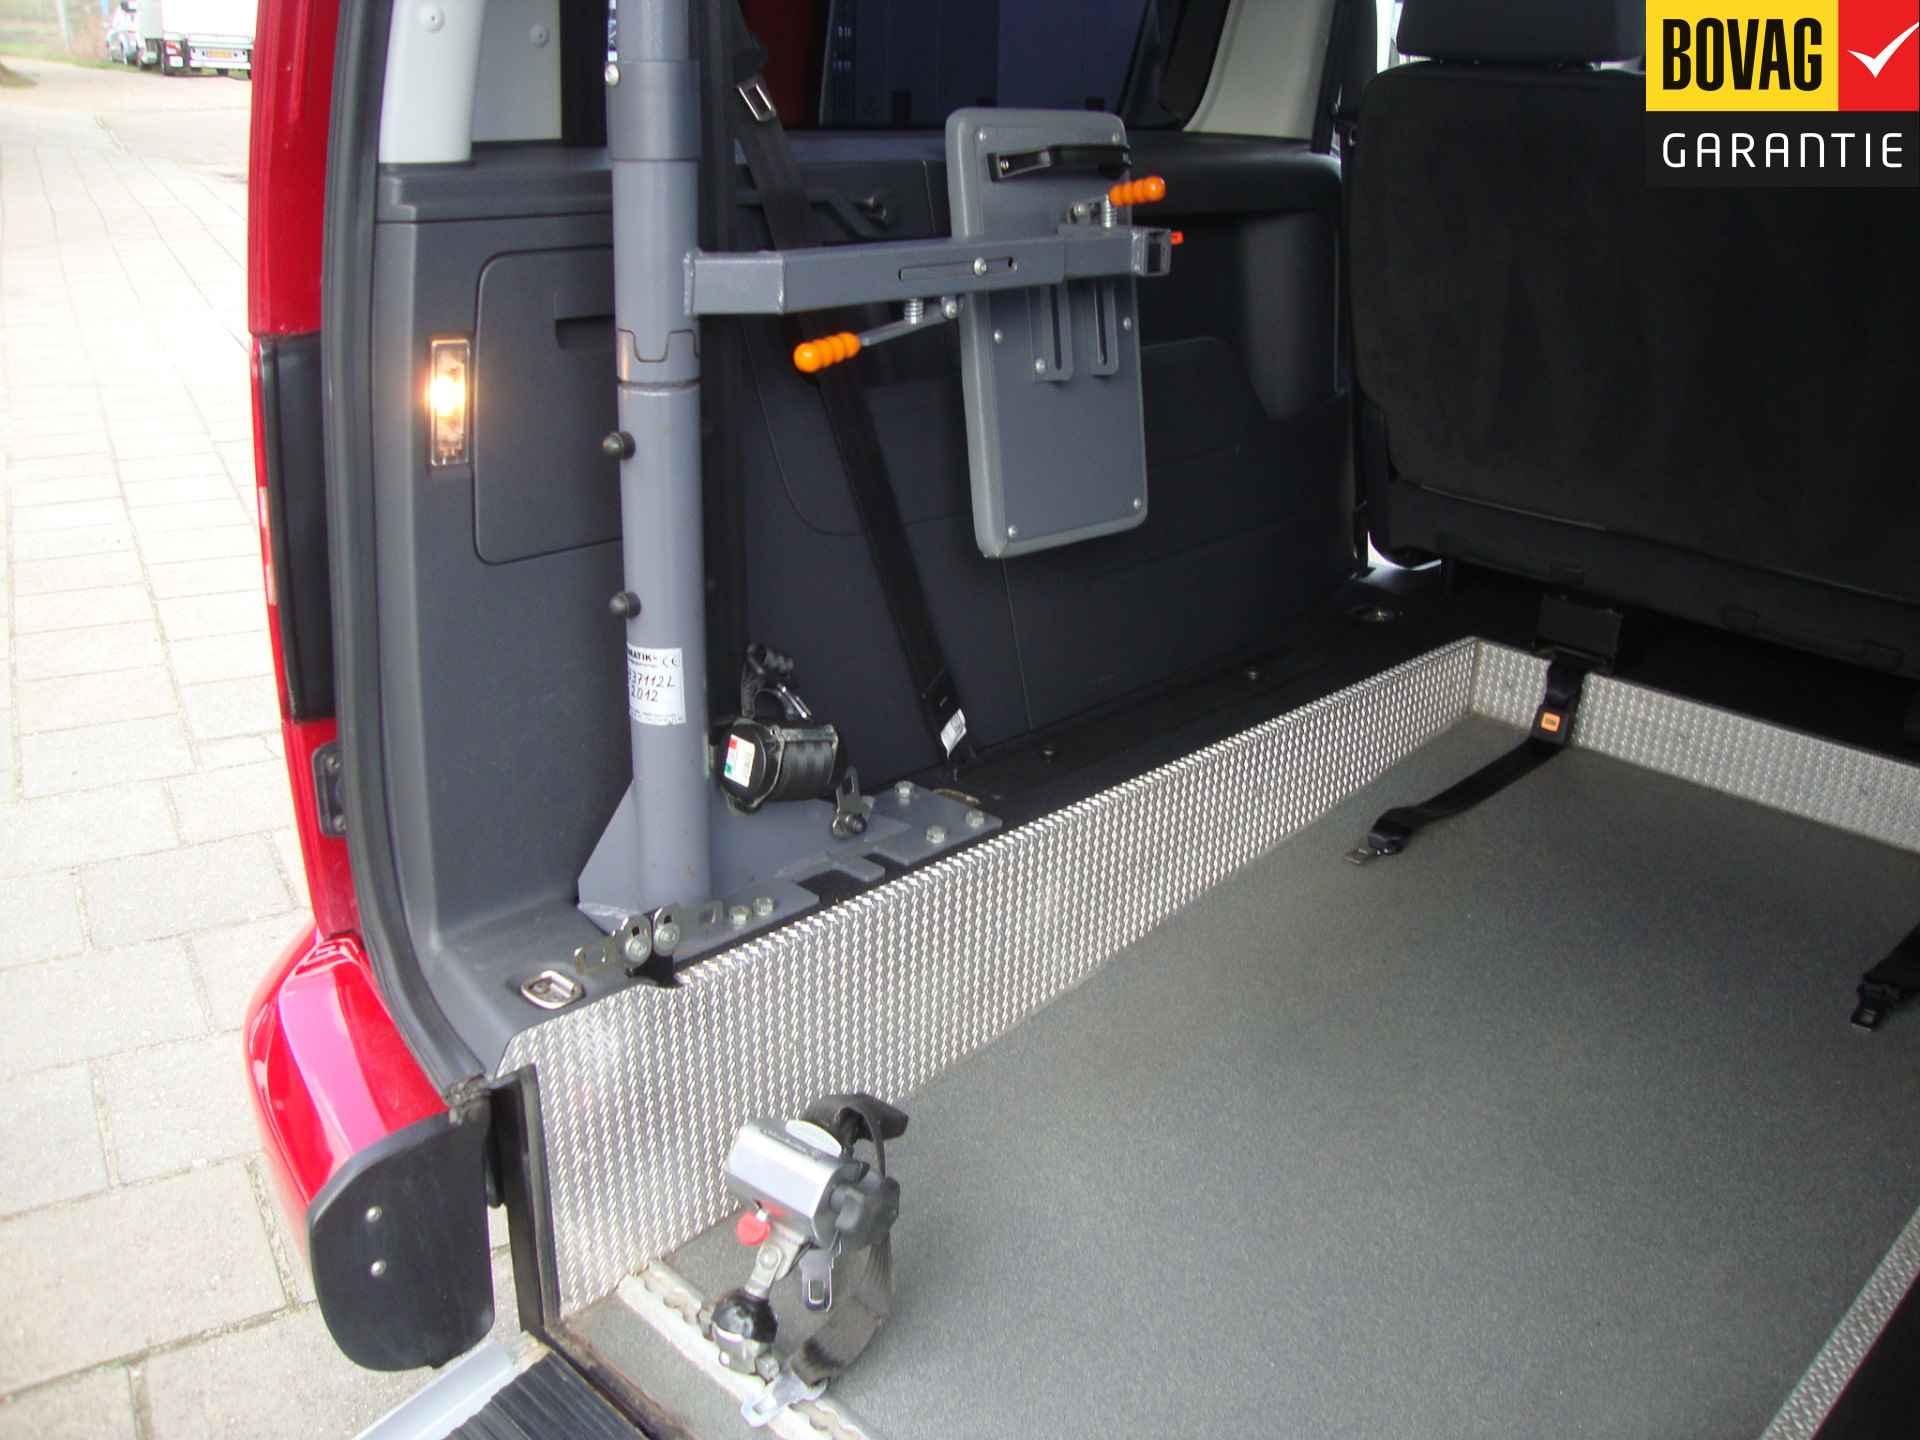 Volkswagen Caddy Maxi 1.2 TSI Trendline Rolstoel / Invalide , 5 pers + 1 rolstoelplaats( Airco,Cruise Control) RIJKLAARPRIJS! - 38/47